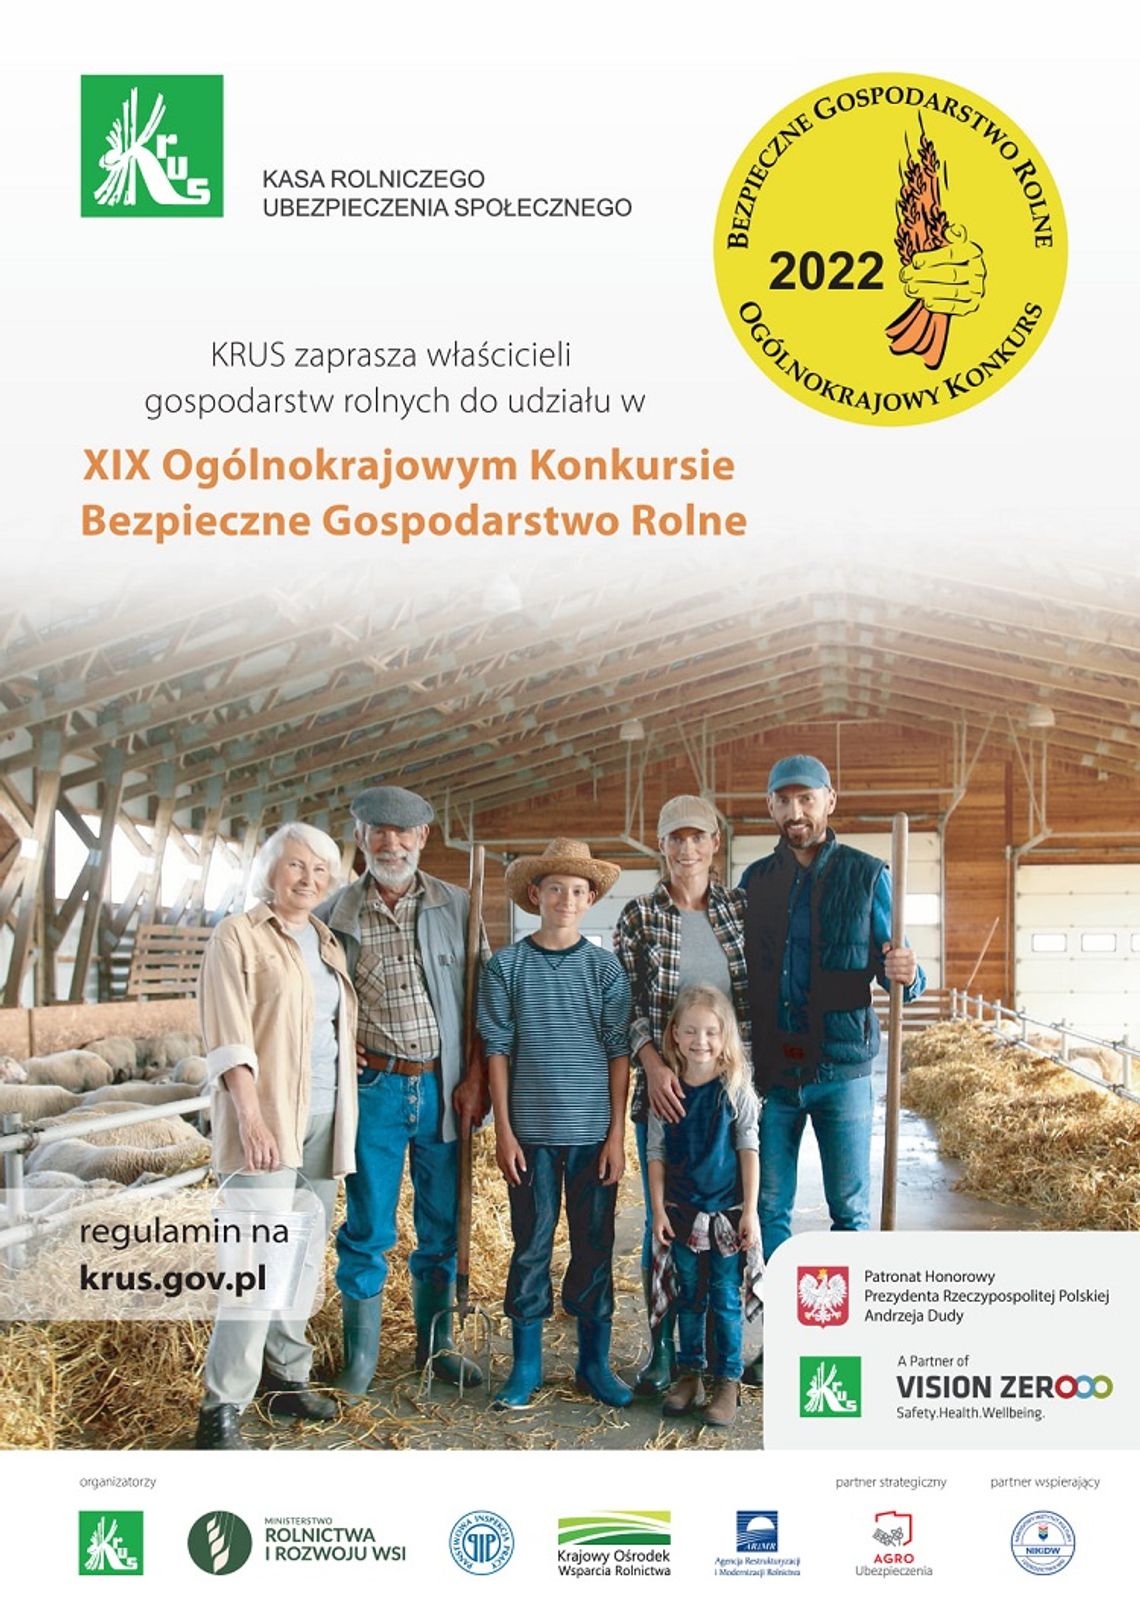  XIX Ogólnokrajowy Konkurs „Bezpieczne Gospodarstwo Rolne” - trwa nabór zgłoszeń.